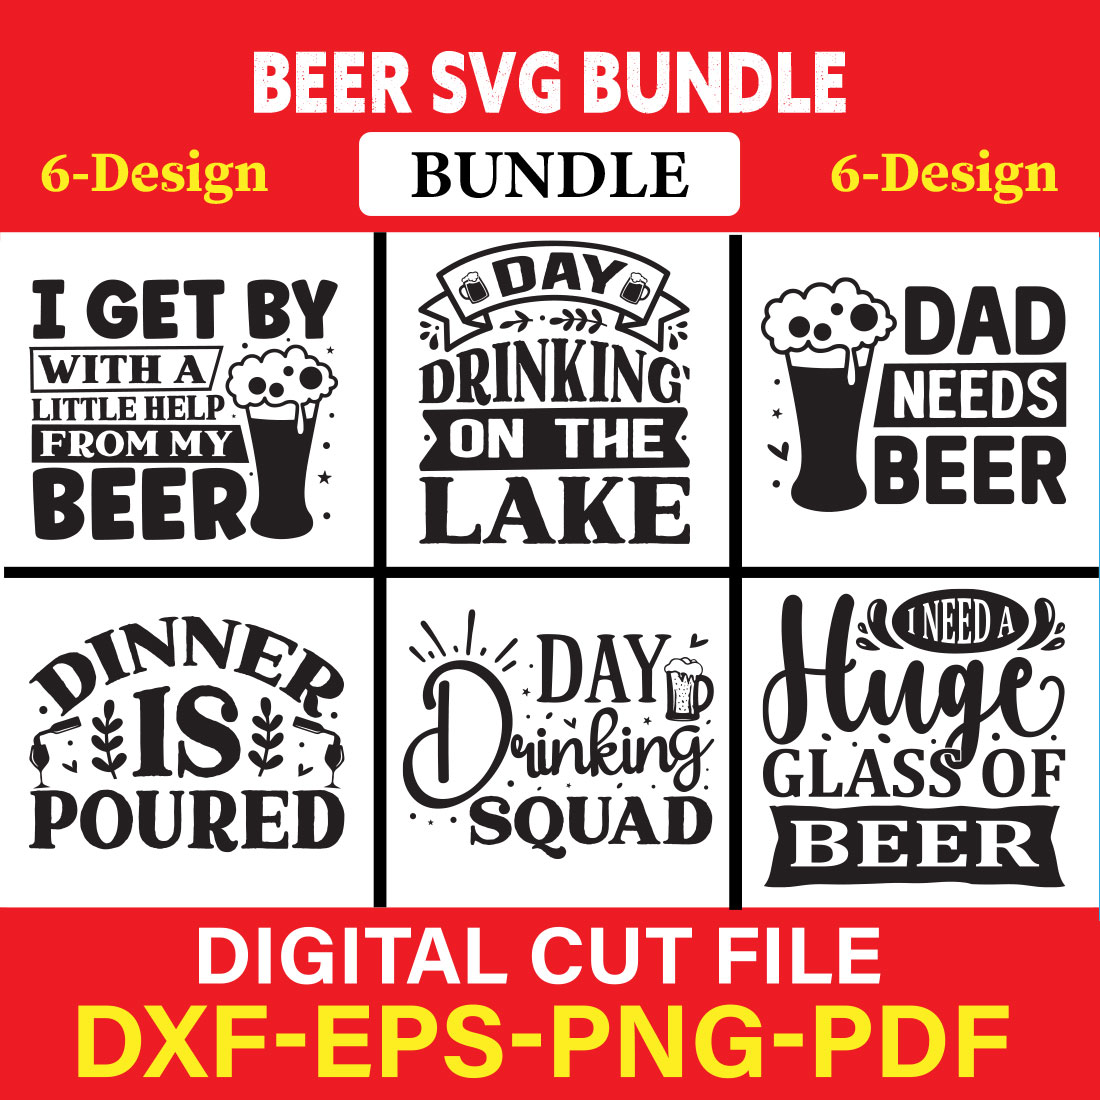 Beer T-shirt Design Bundle Vol-2 cover image.